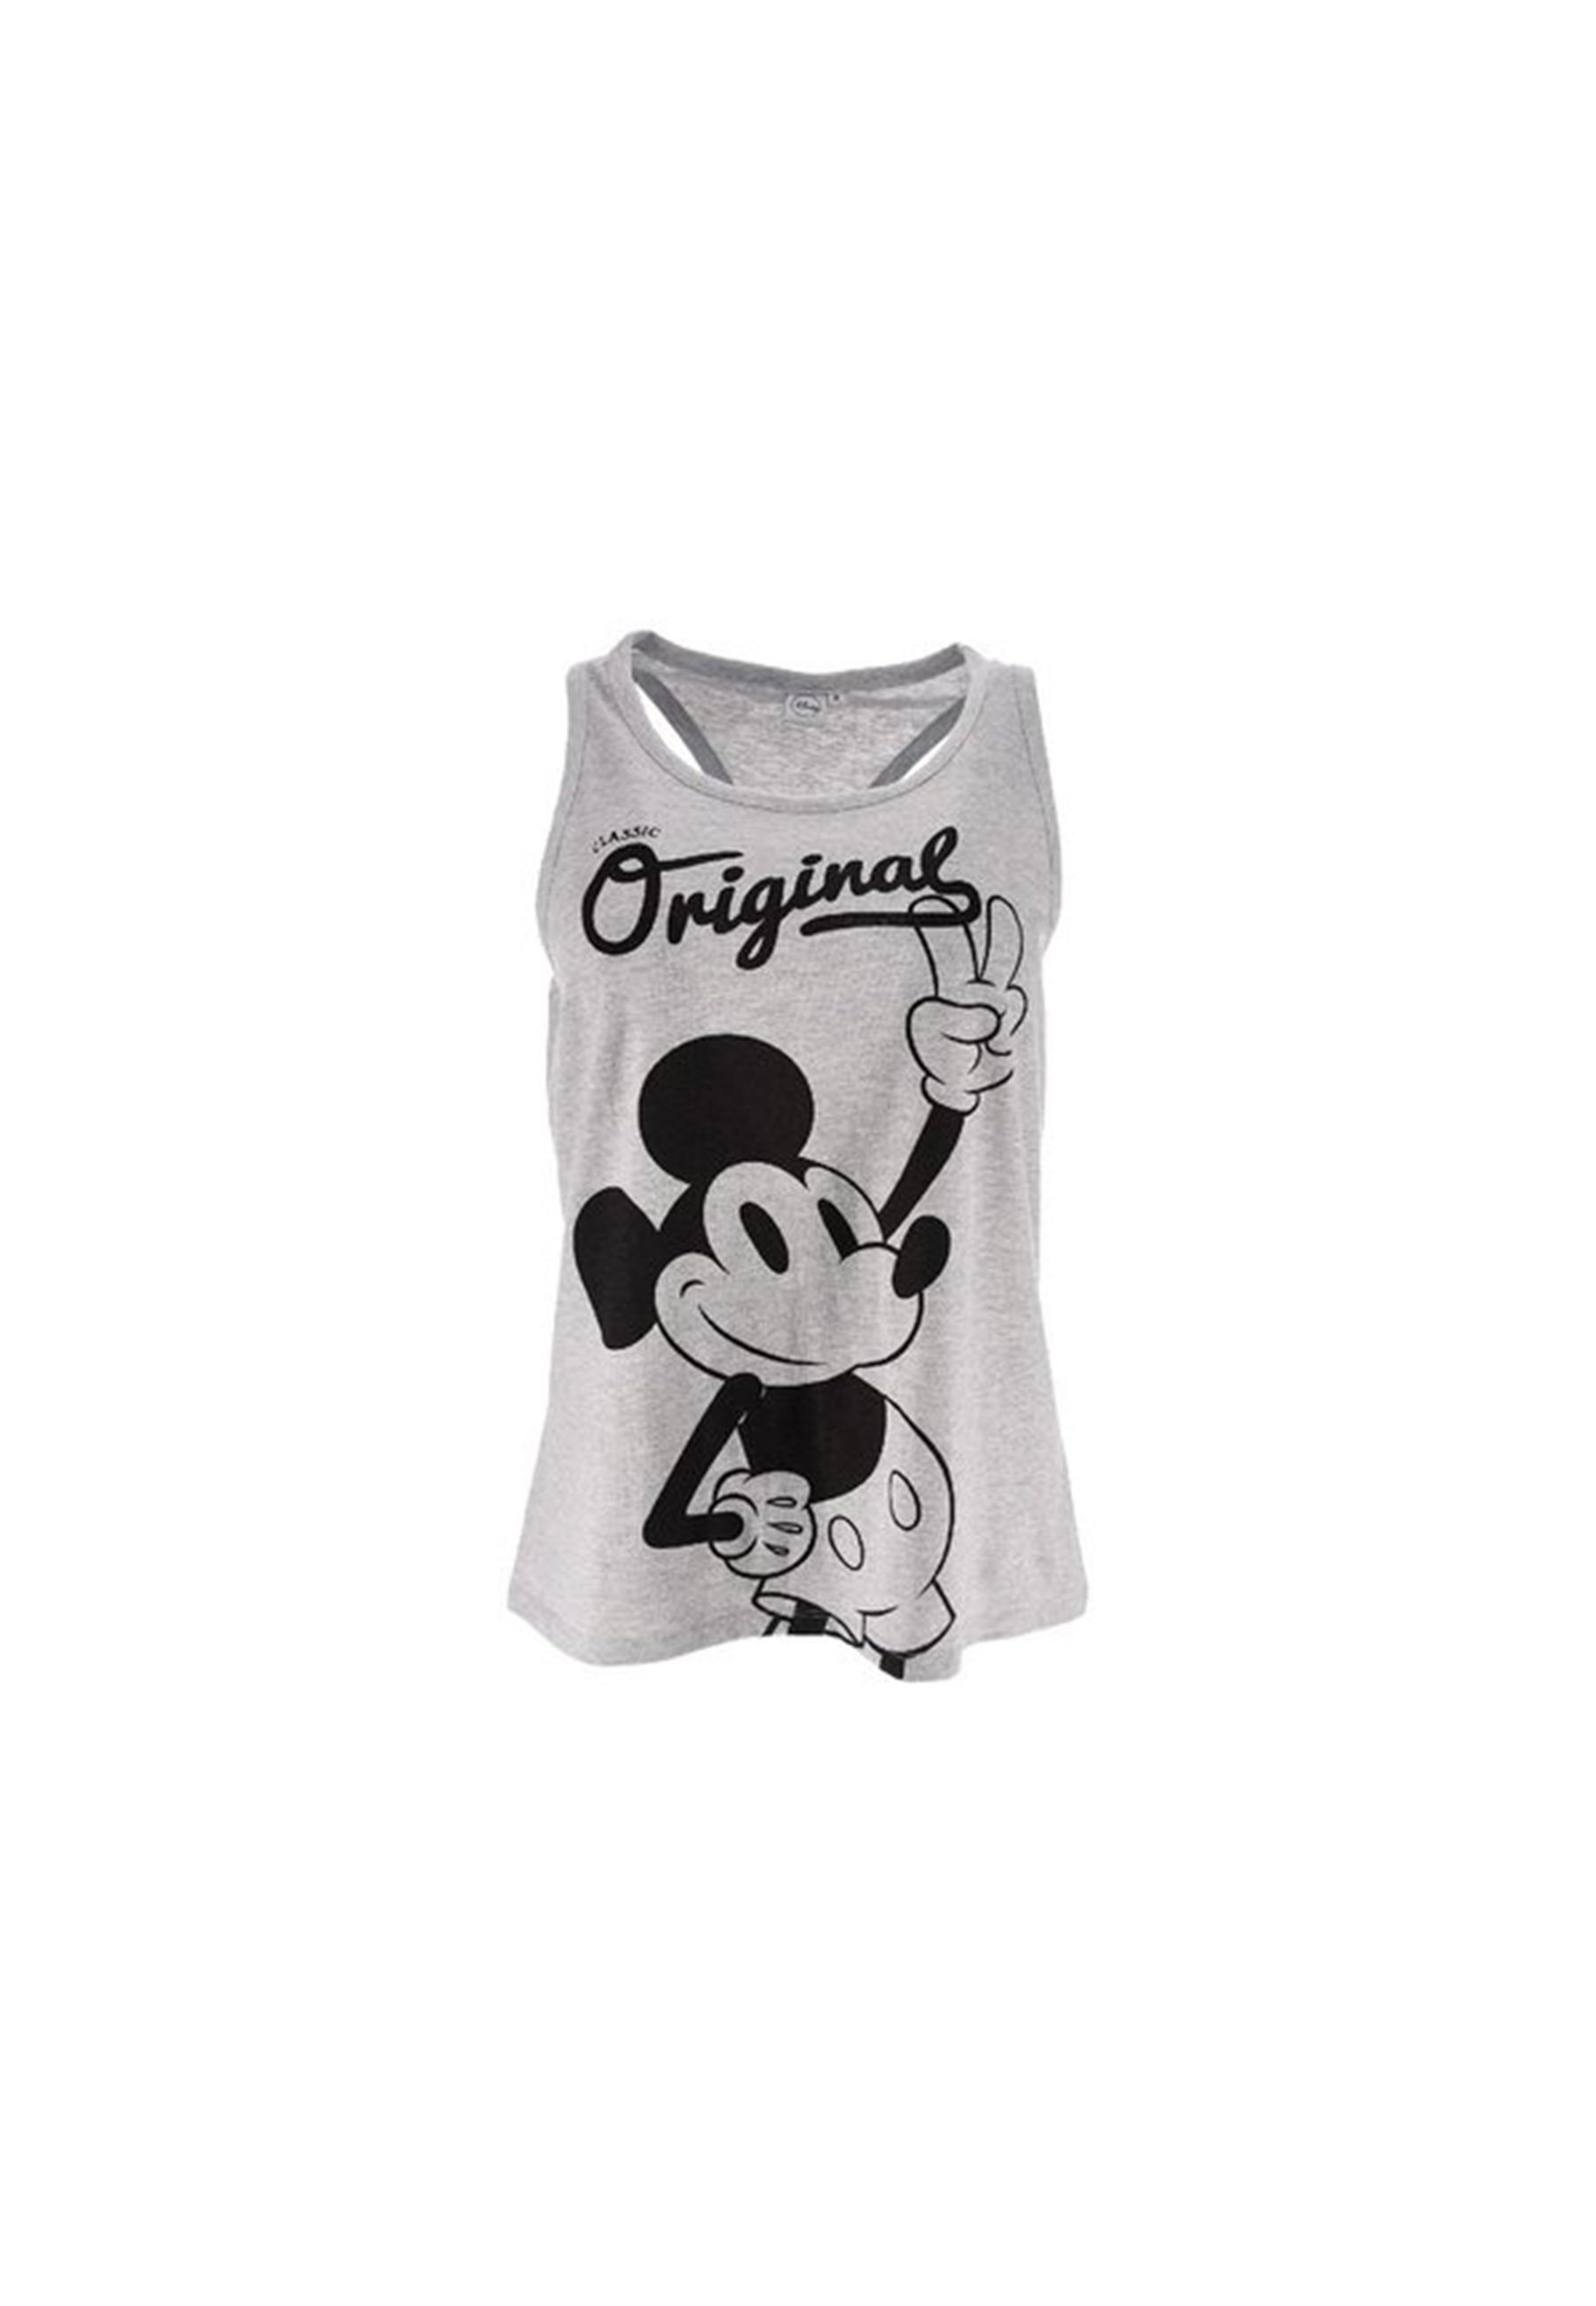 Disney Mickey Mouse Muskelshirt Damen Top Shirt ärmellos Grau